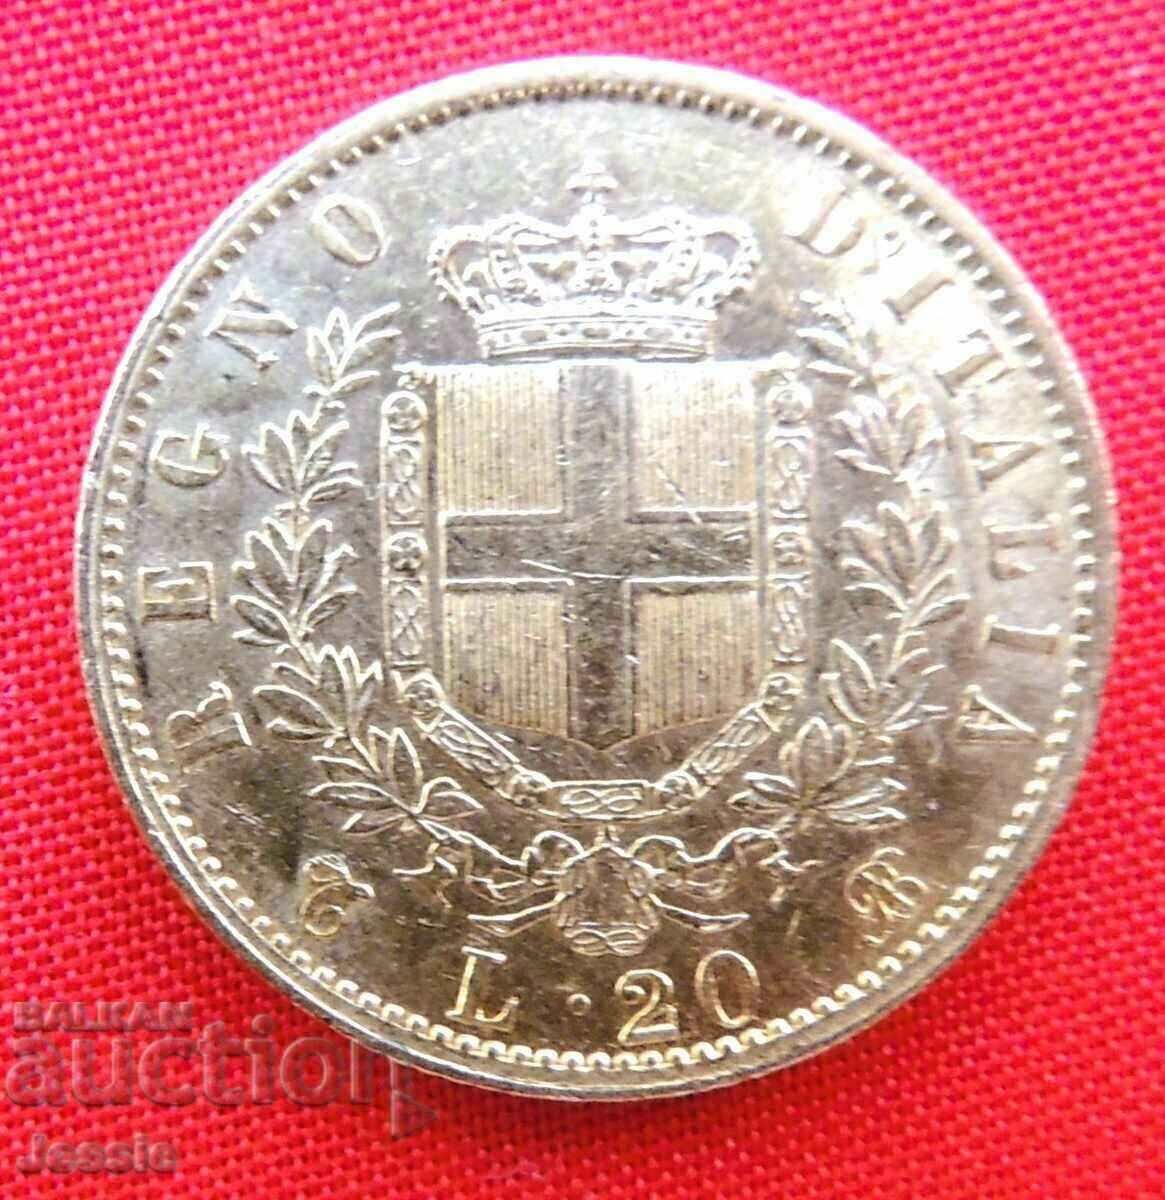 20 Lire 1863 Italy ( 20 лири Италия ) ( злато )